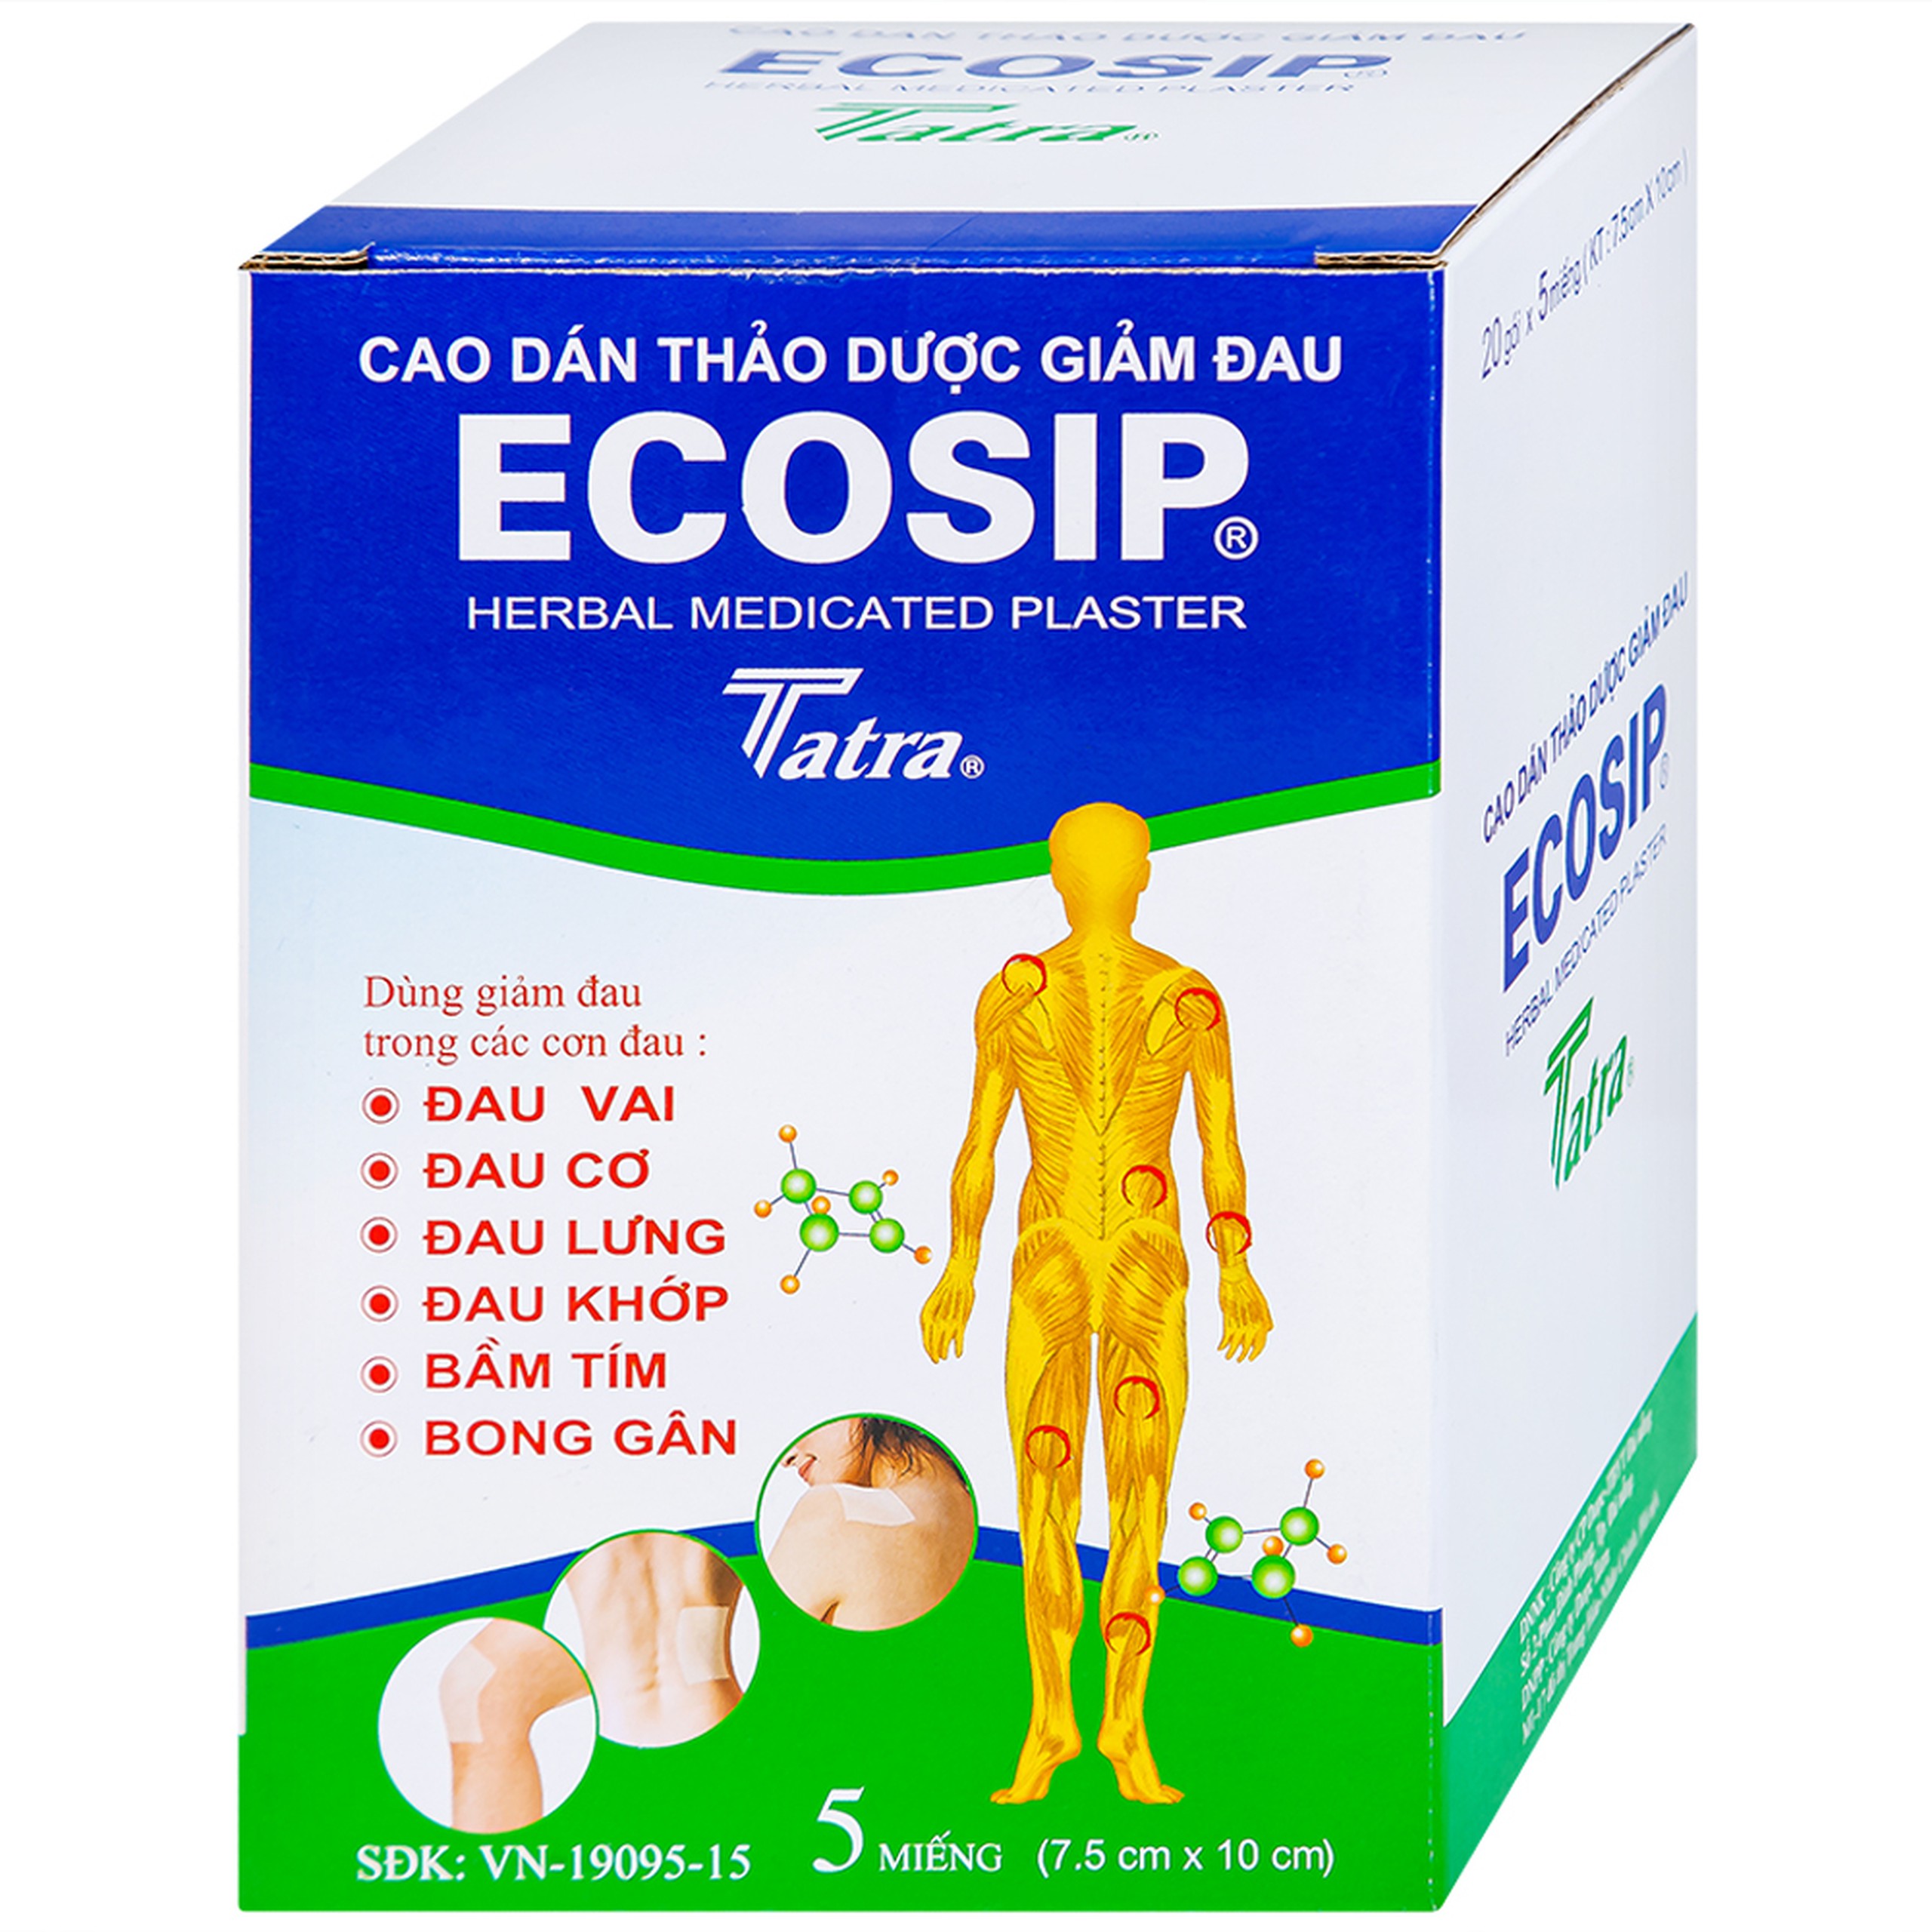 Cao dán thảo dược Ecosip Tatra giảm đau vai, đau lưng (20 gói x 5 miếng)